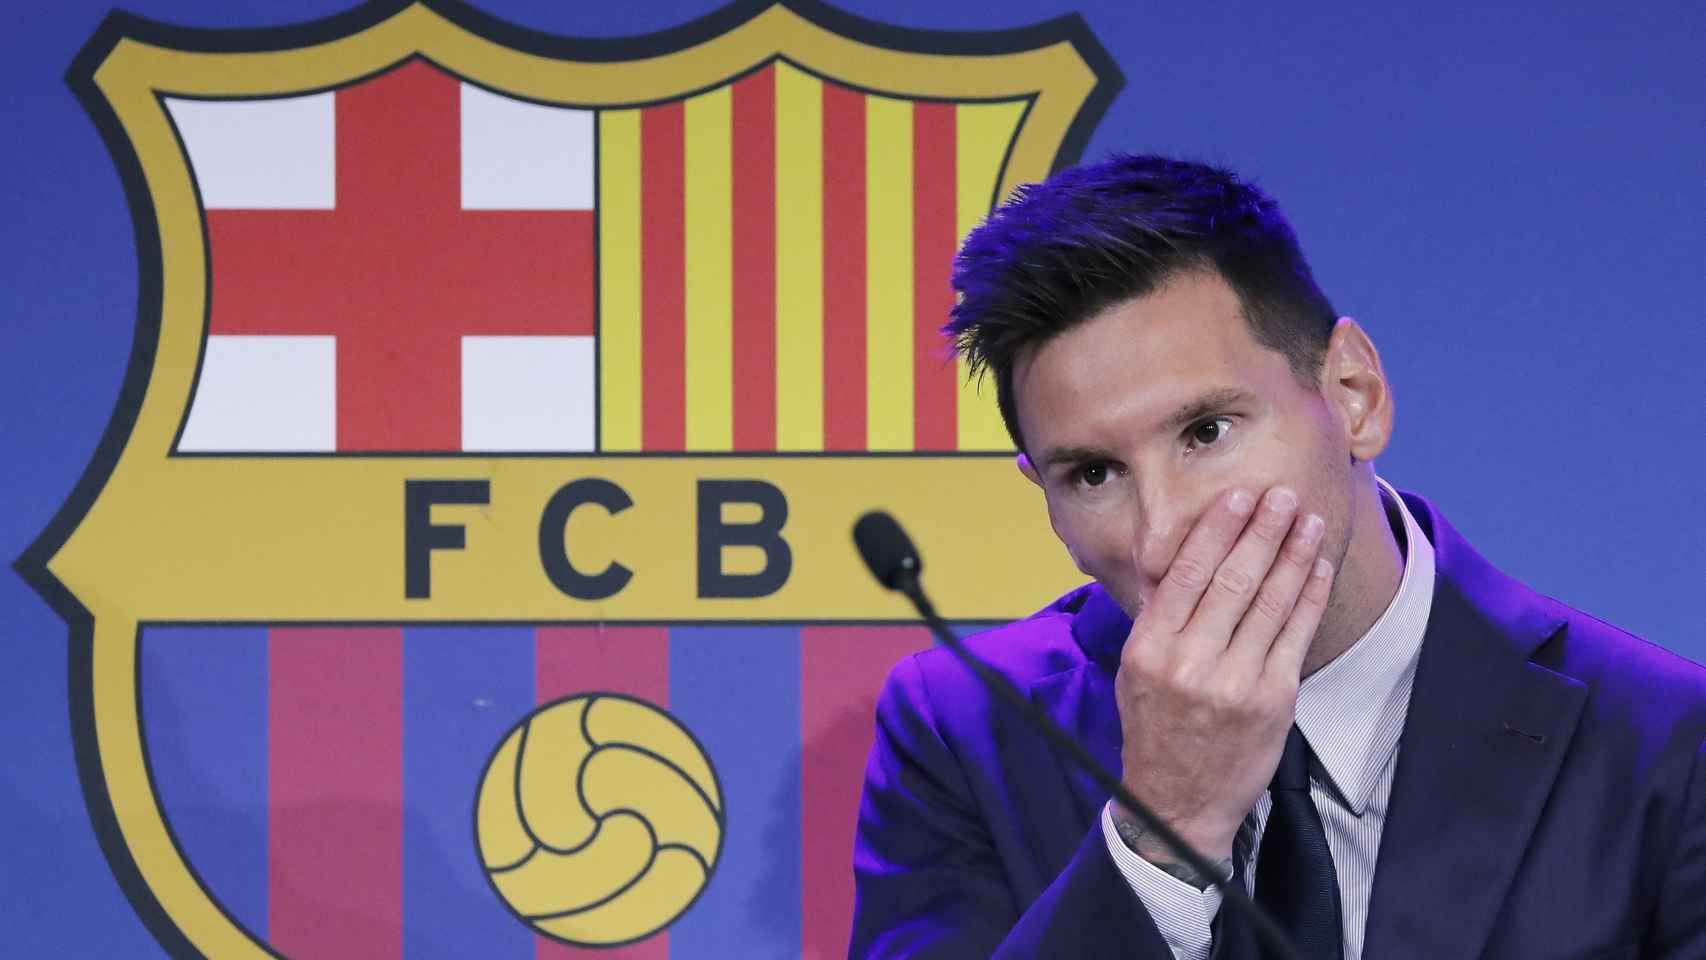 Leo Messi en la comparecencia de su despedida del Barça / EFE